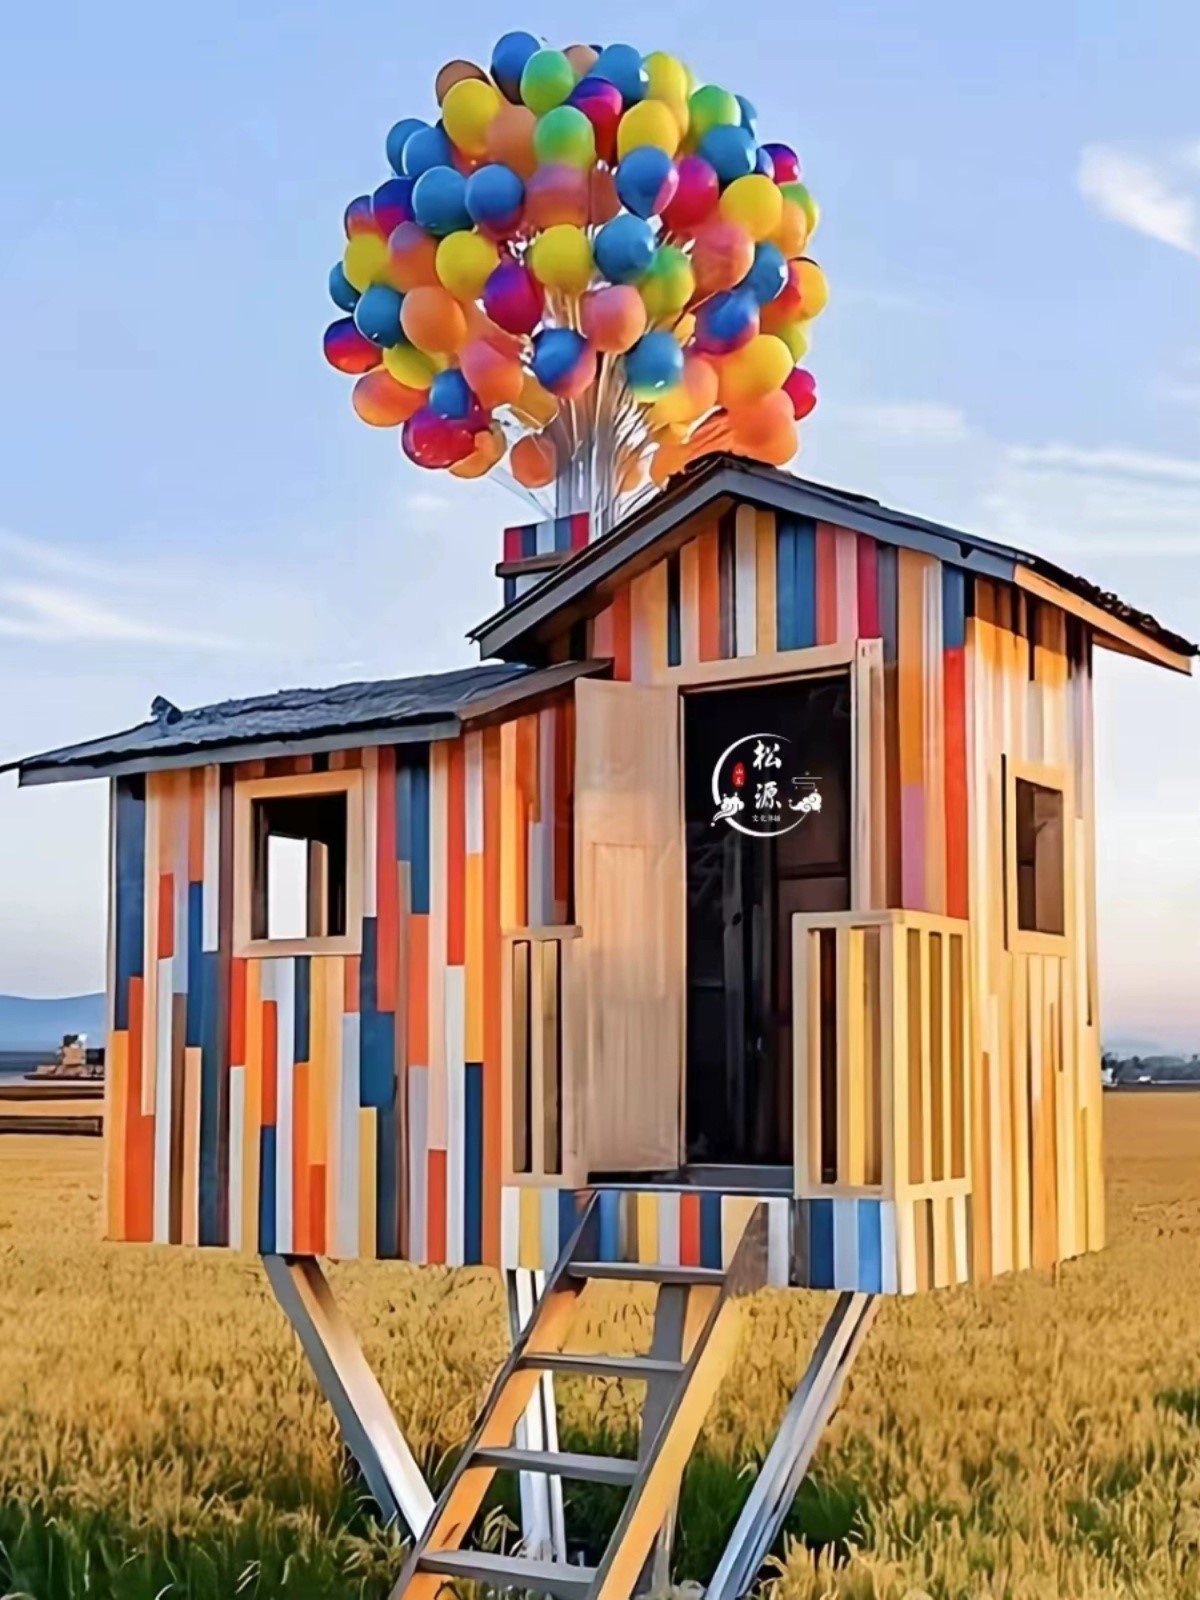 气球小木屋 飞屋环游记景区绿地拍照打卡气球小屋防腐木引流摆件